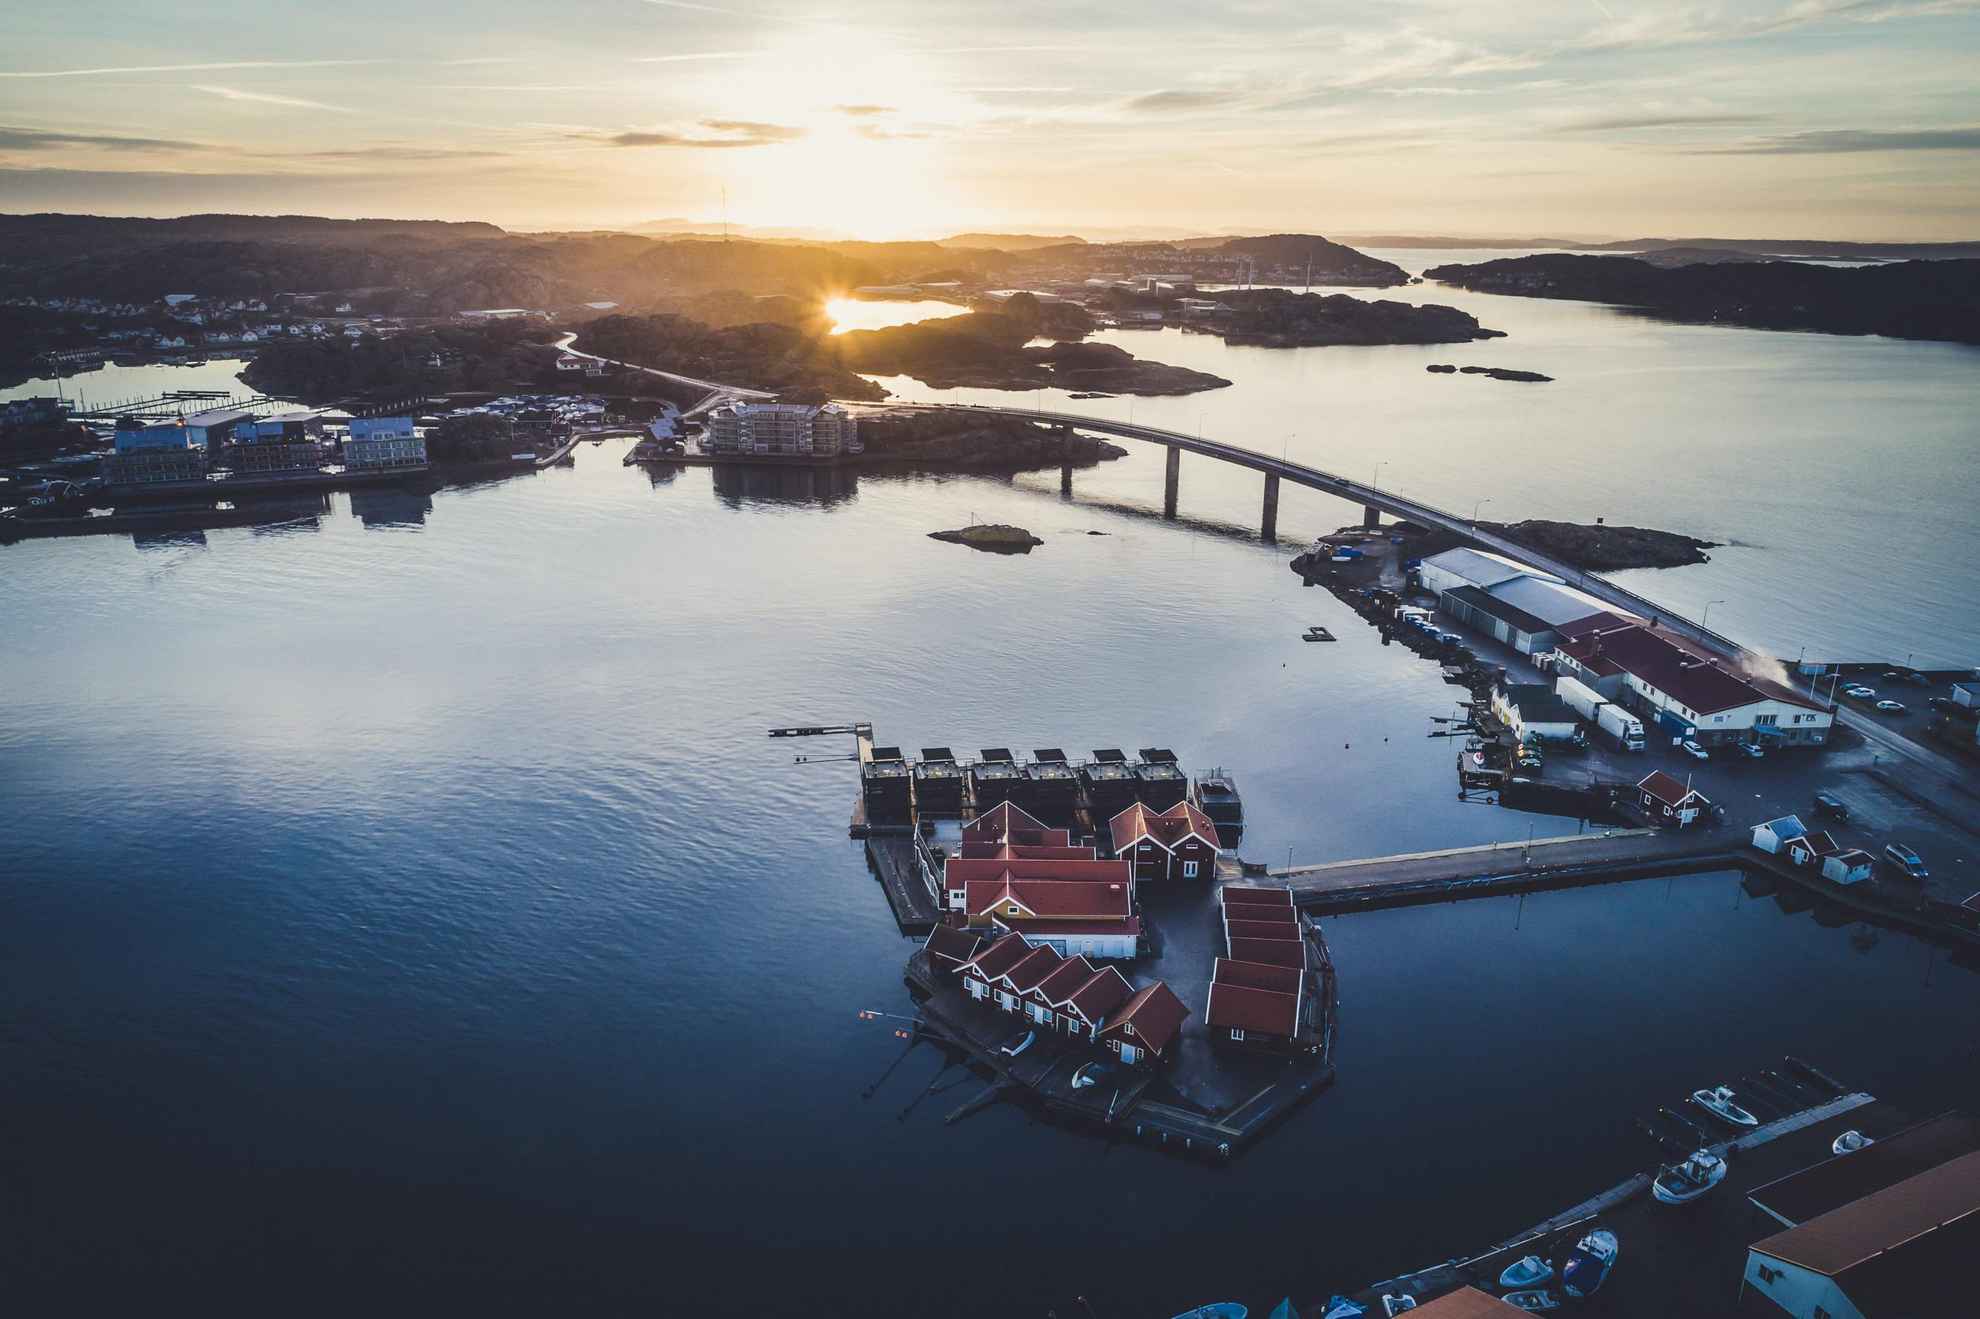 Vue aérienne de l'hôtel-restaurant flottant Salt & Sill ainsi que de ses environs dans l'archipel de la Côte Ouest de la Suède.